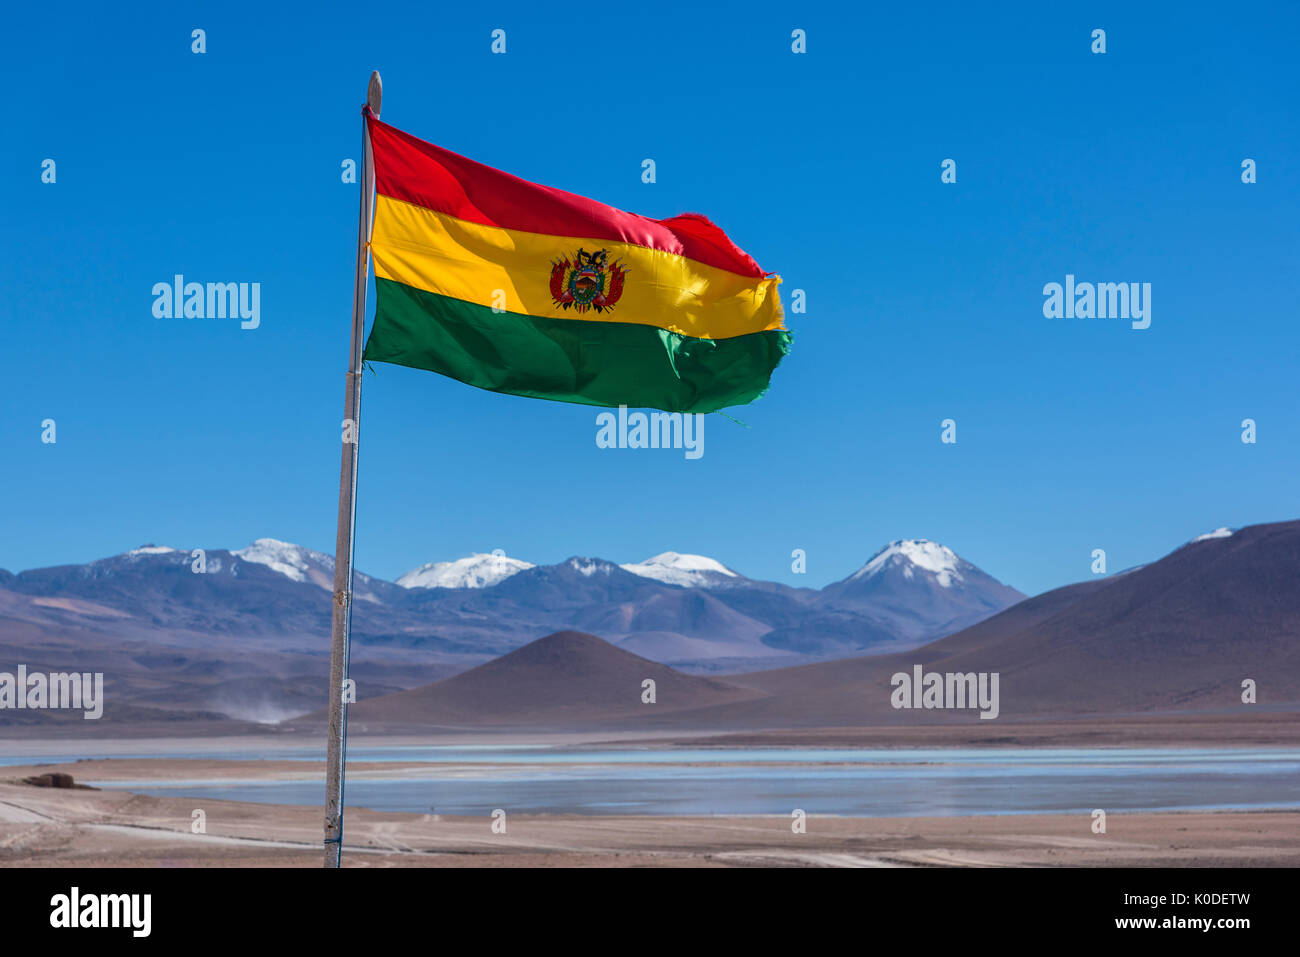 L'Amérique du Sud, Andes, l'Altiplano, Bolivie, Bolivie frontière du Chili avec drapeau Banque D'Images